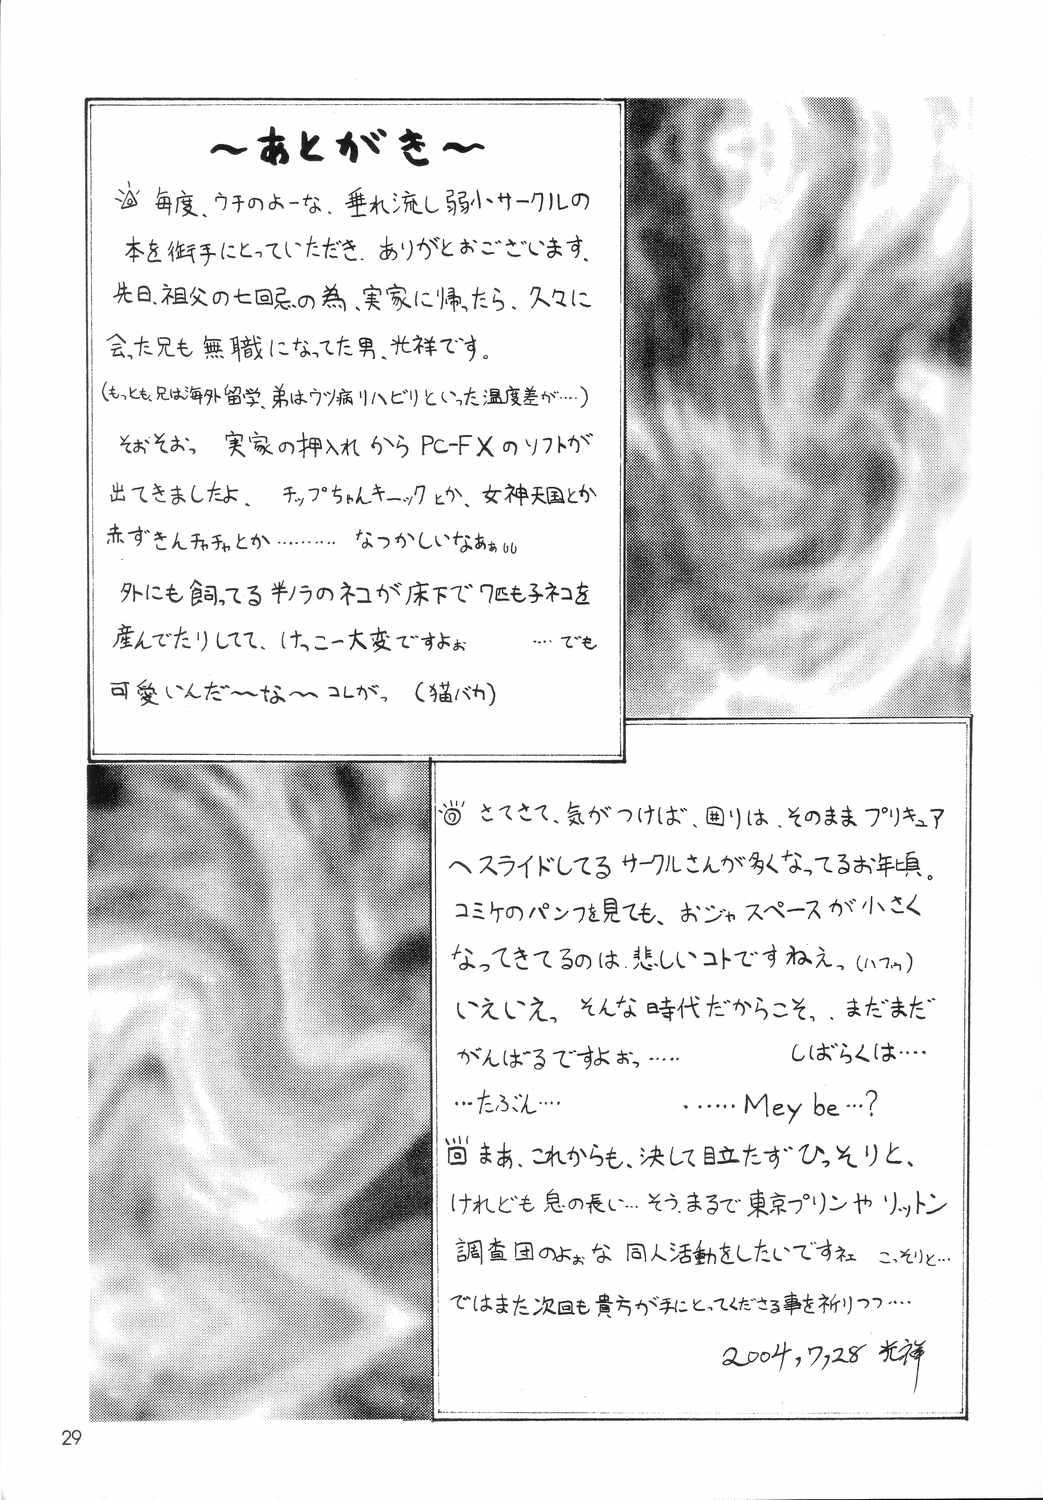 Sloppy Blowjob ORANGE DAY'S - Ojamajo doremi Hairy Sexy - Page 28